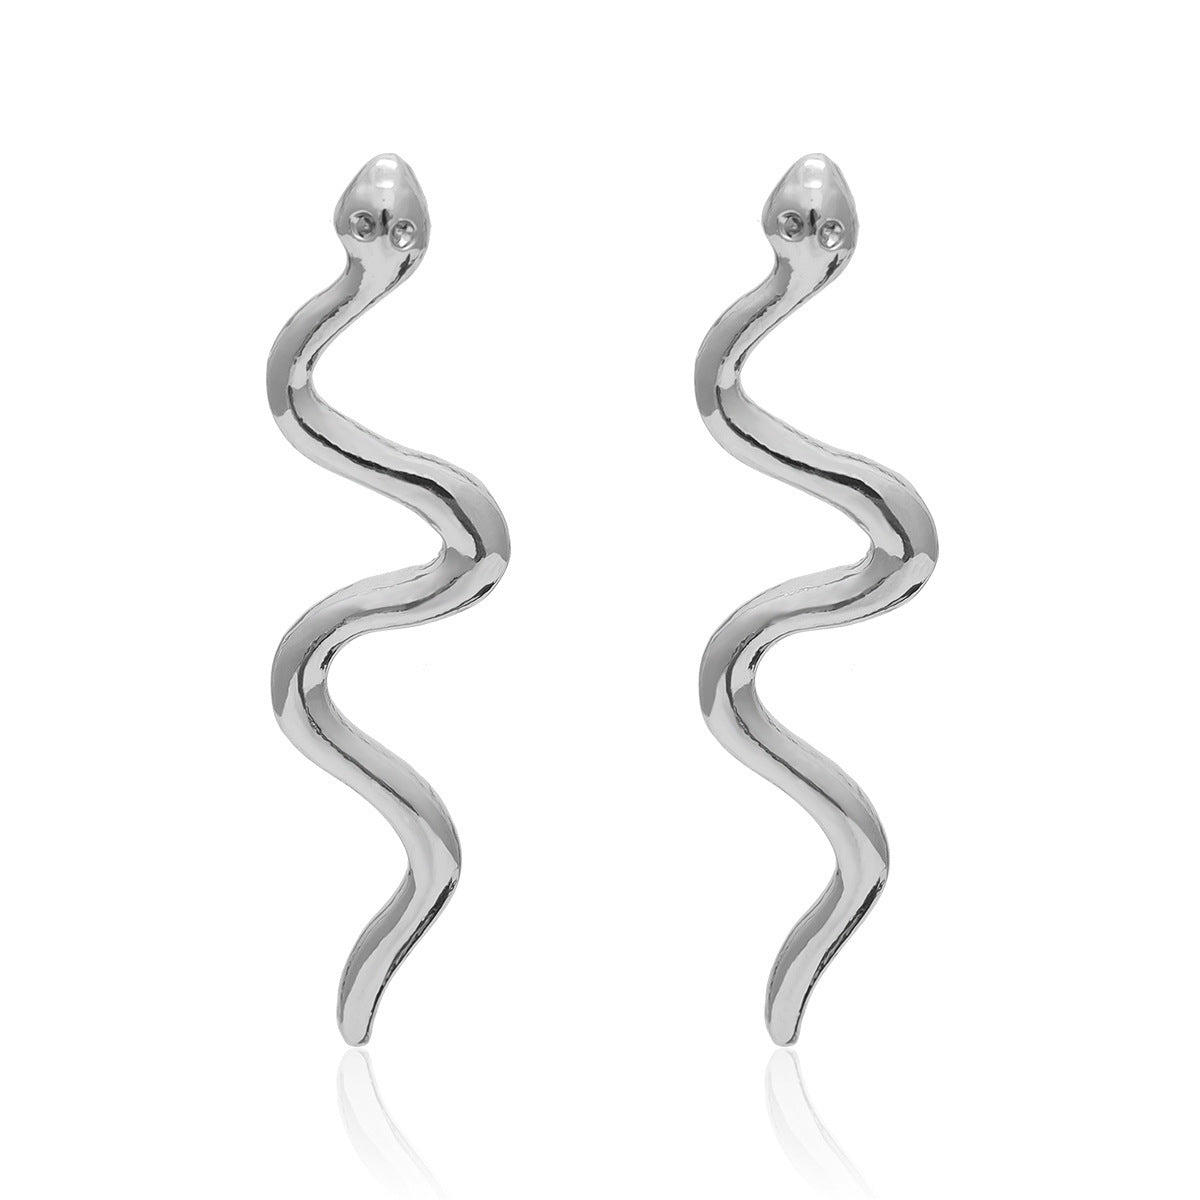 Geometric Earrings Simple Linear Snake Diamond Earrings